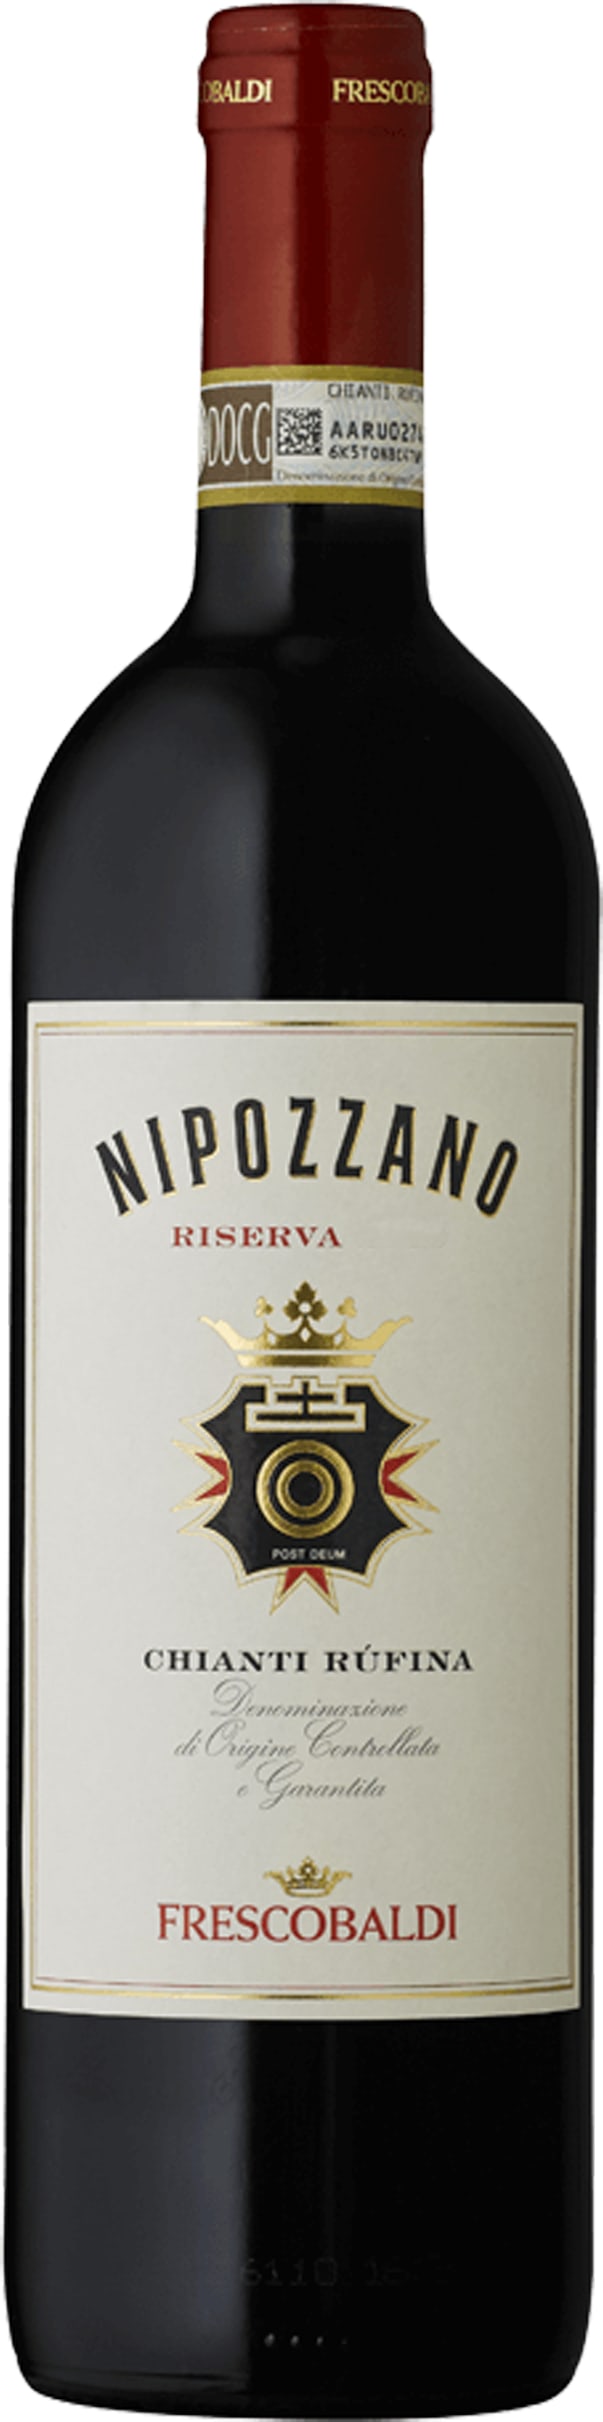 Frescobaldi Nipozzano Chianti Rufina Riserva 2017 75cl - Buy Frescobaldi Wines from GREAT WINES DIRECT wine shop